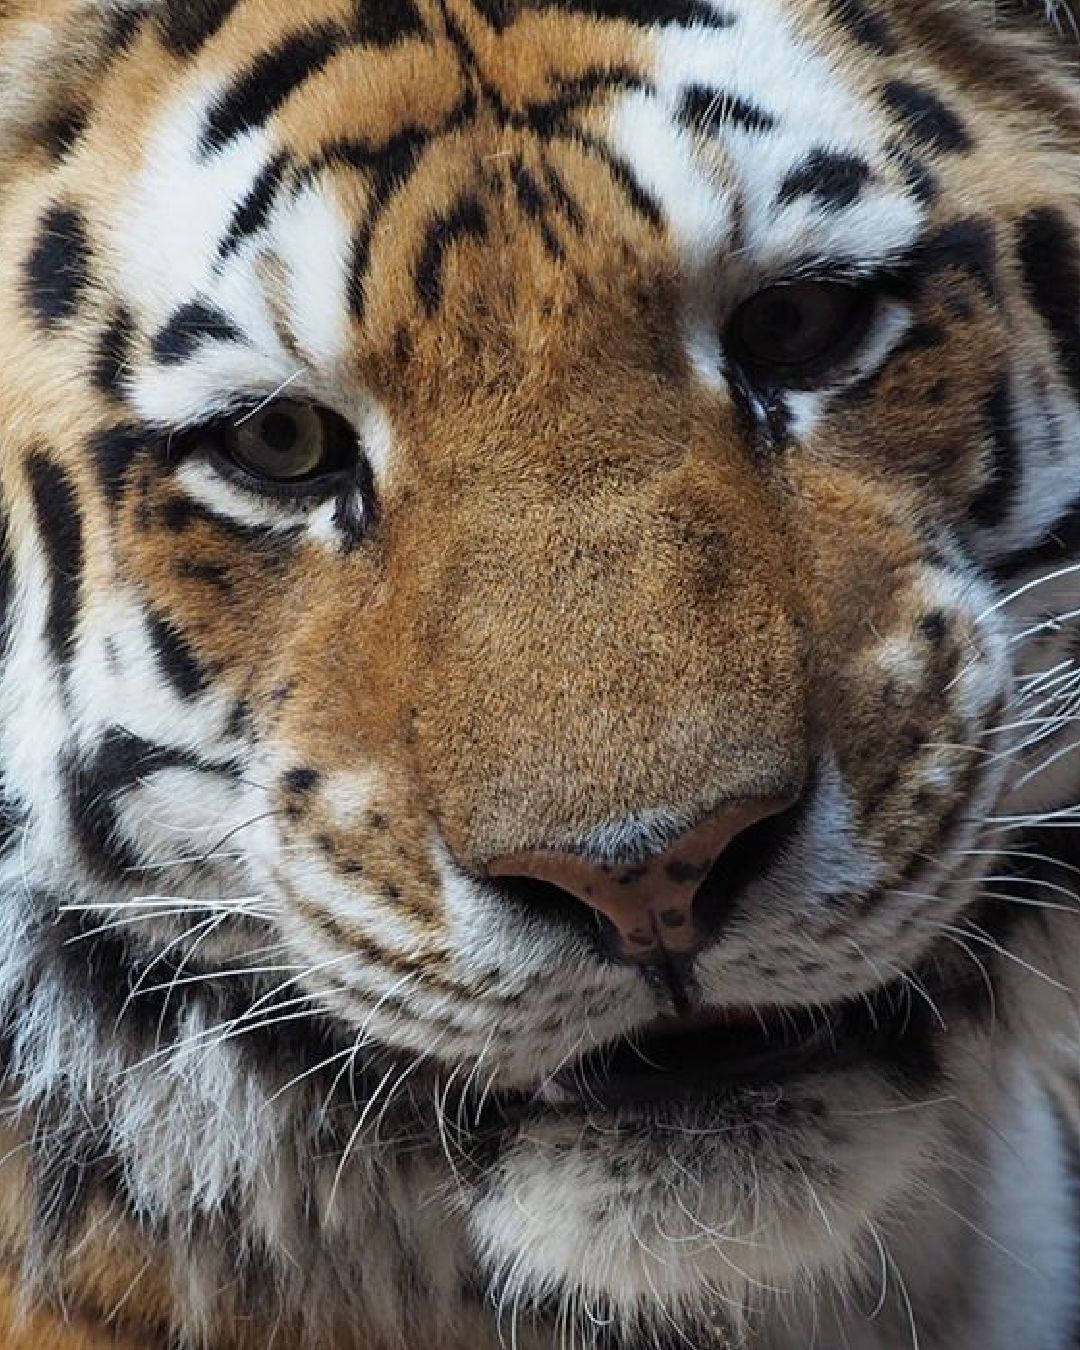 a close up of tiger at interactive zoo experience niagara